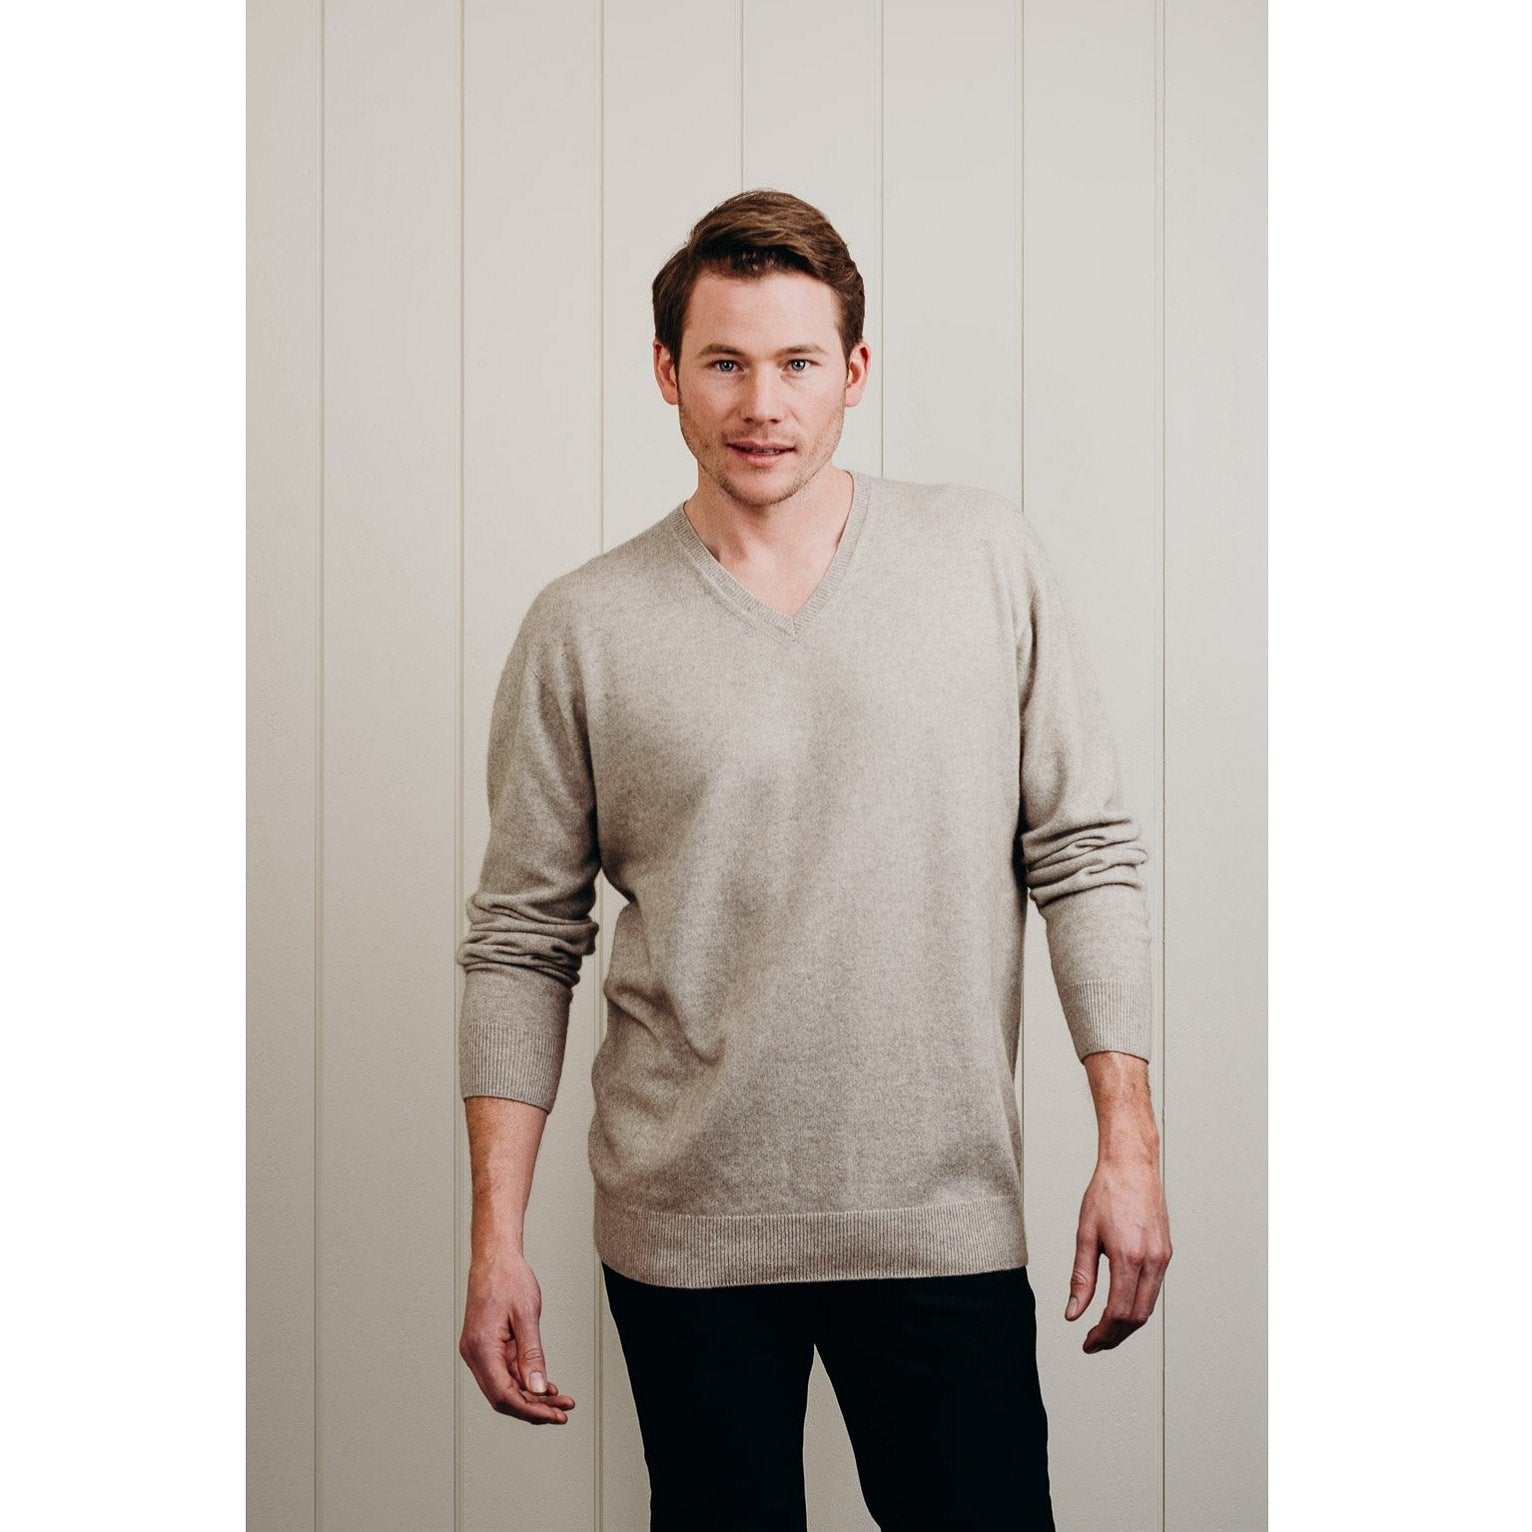 Men's beige Cashmere v neck sweater - Kapeka NZ